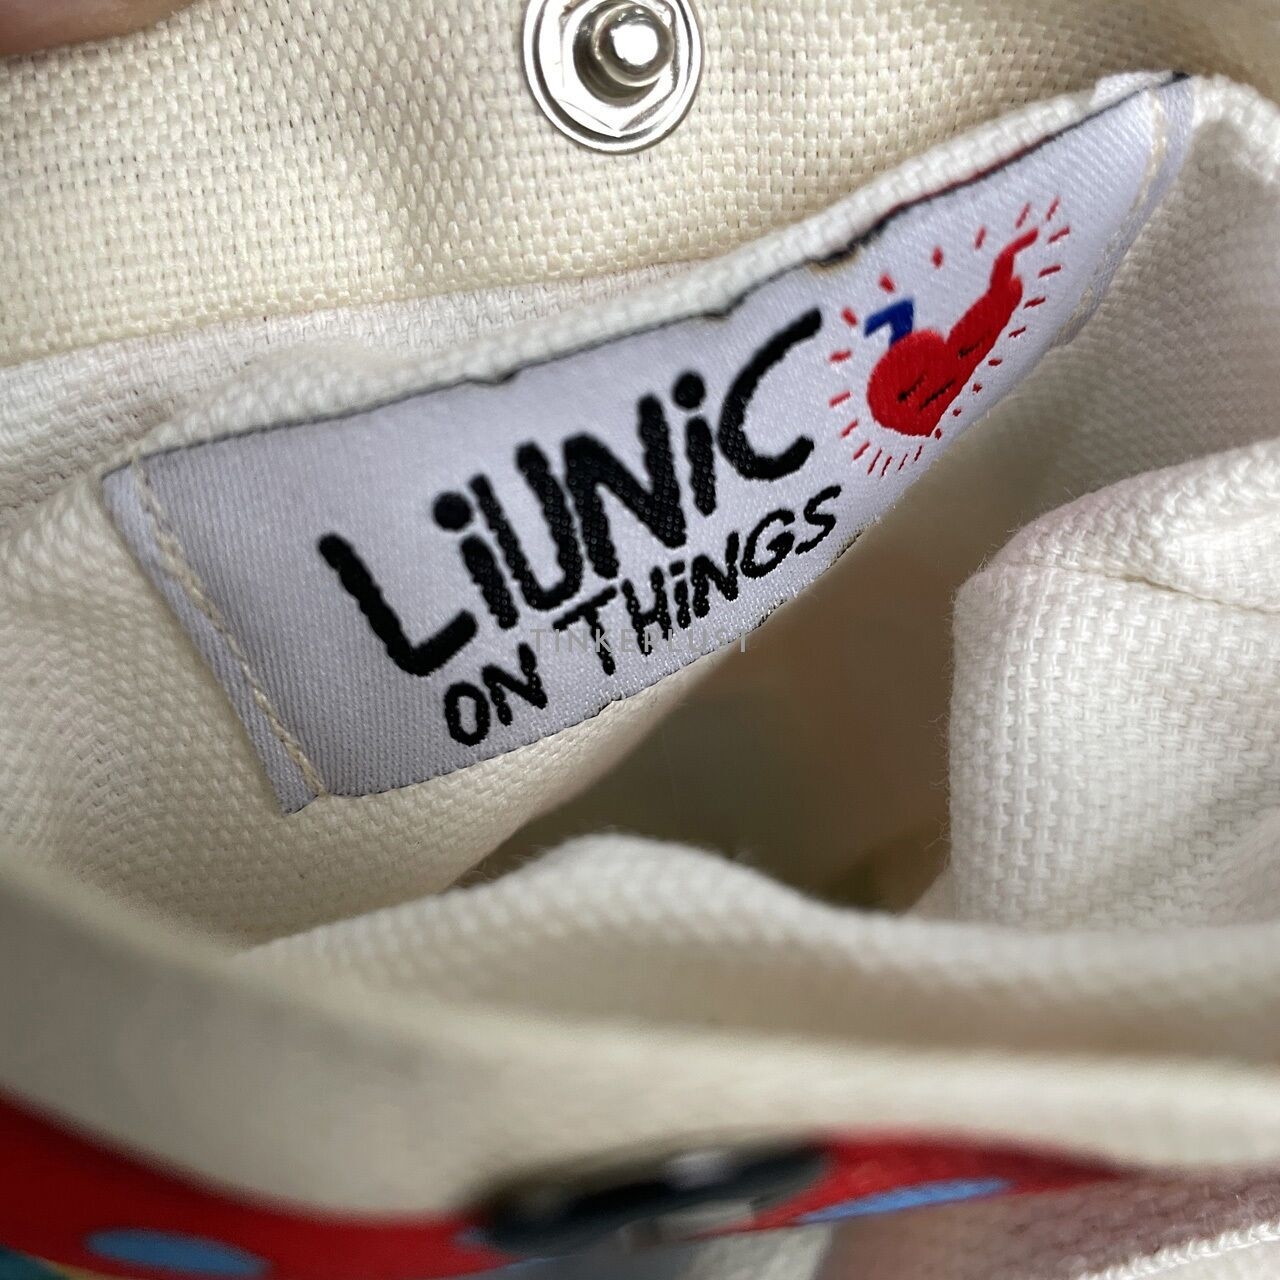 Liunic OnThings Multi Sling Bag